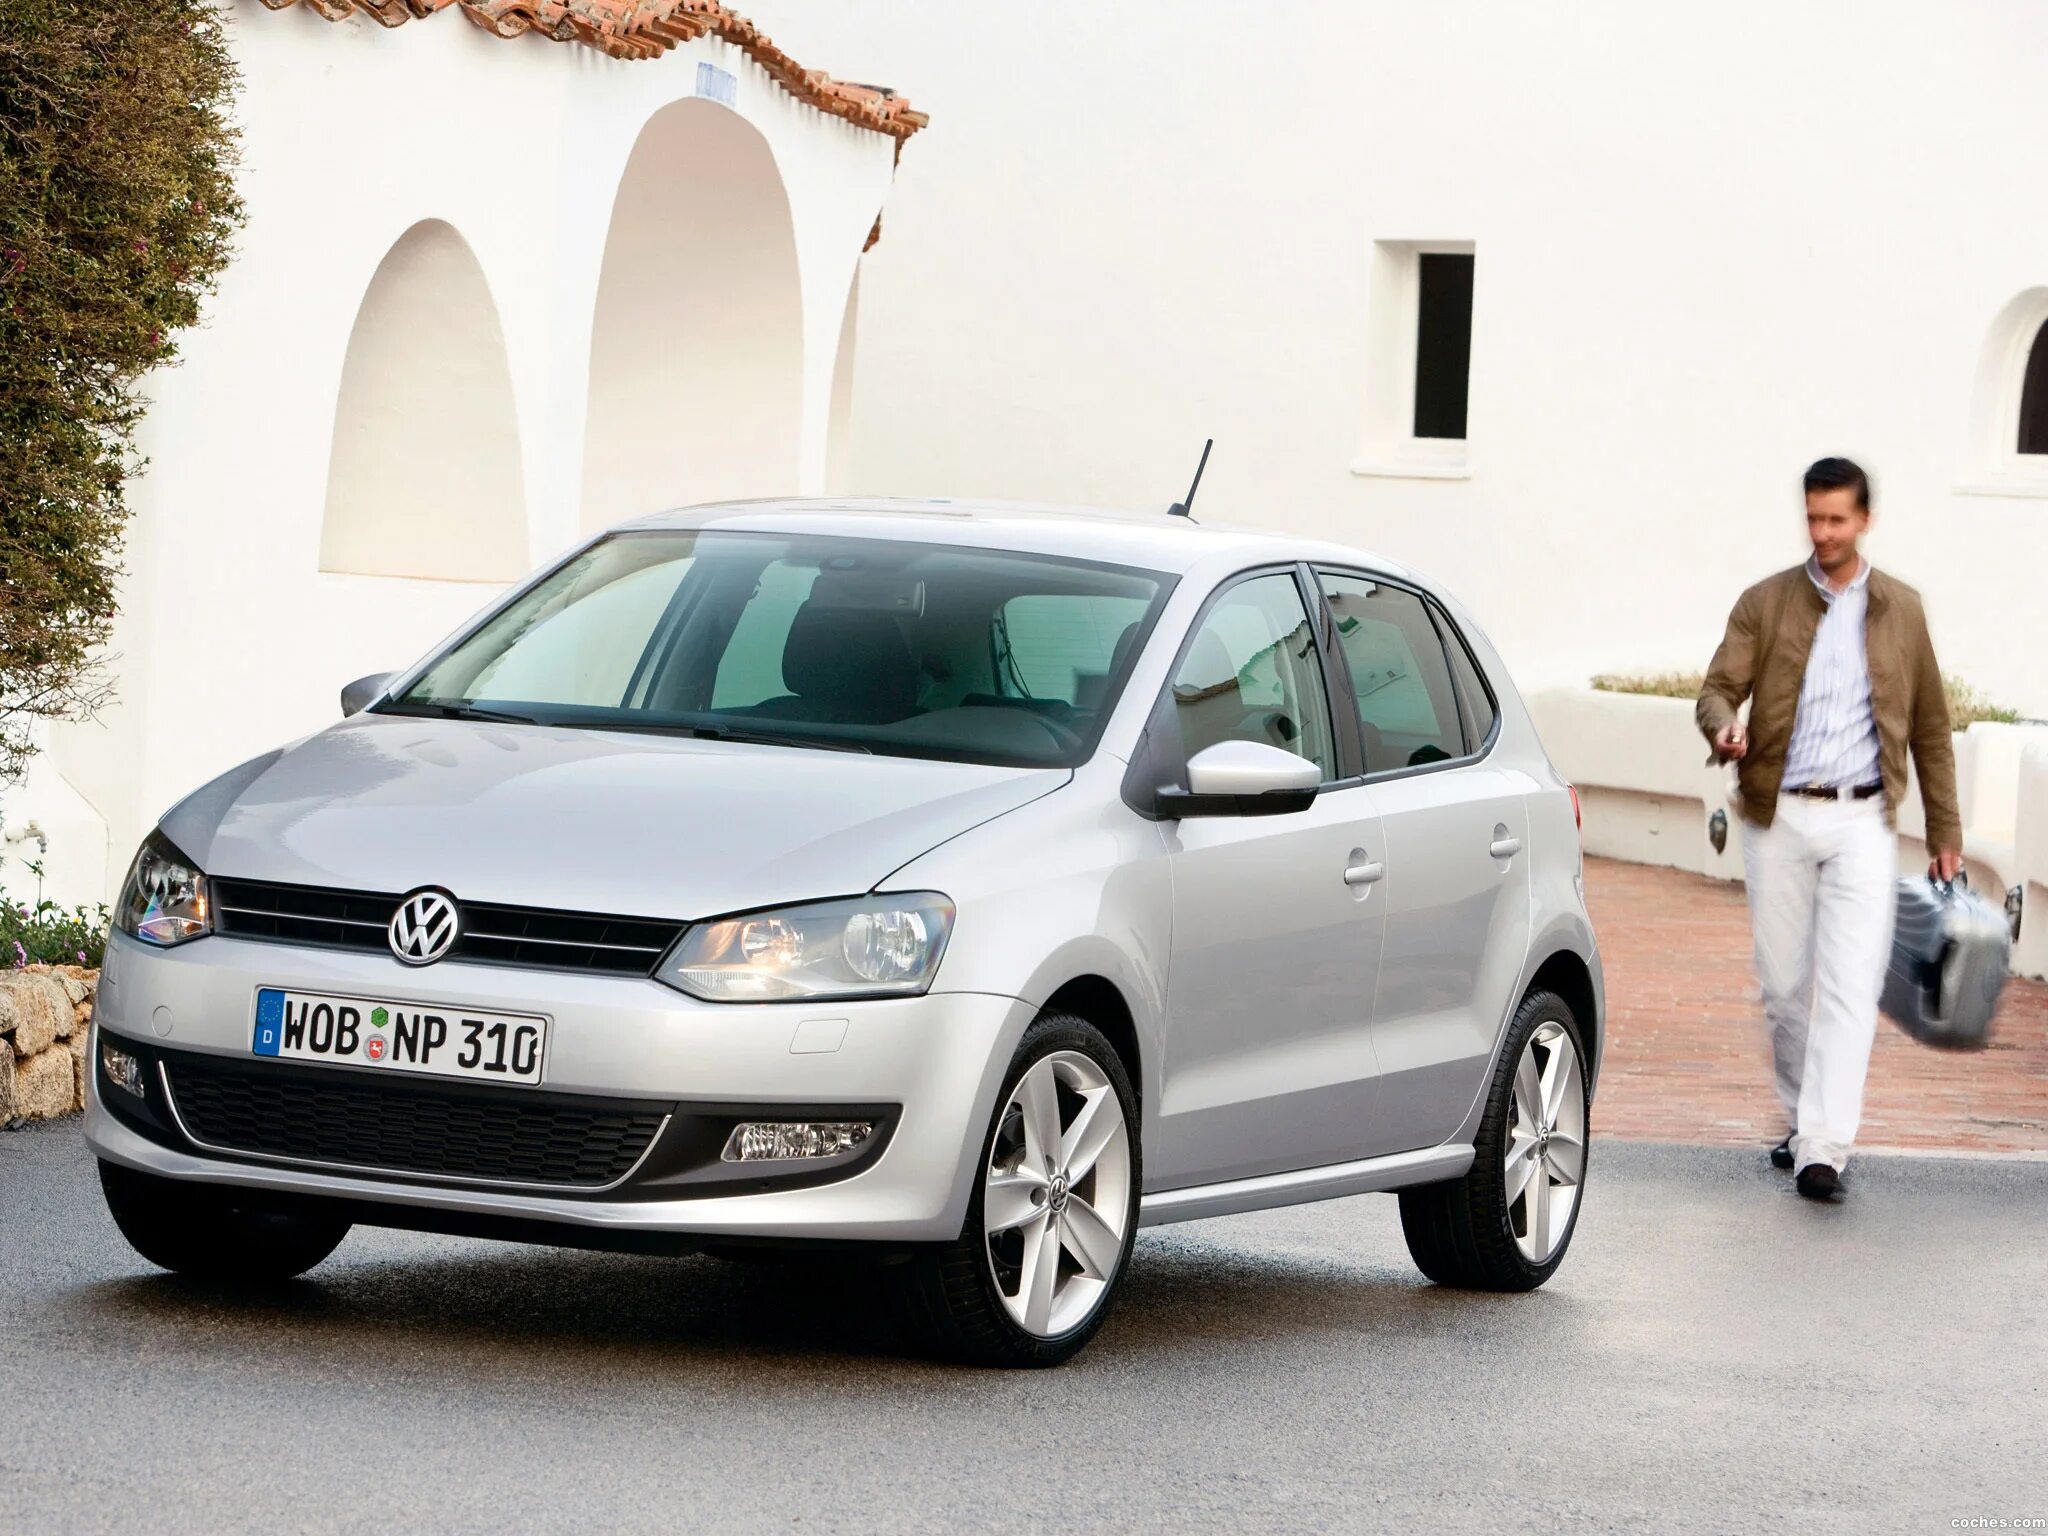 Купить поло 1.4. Volkswagen Polo хэтчбек 1.6 2012. Volkswagen Polo хэтчбек 1.6. VW Polo GTI 2011. Машина Фольксваген поло хэтчбек.